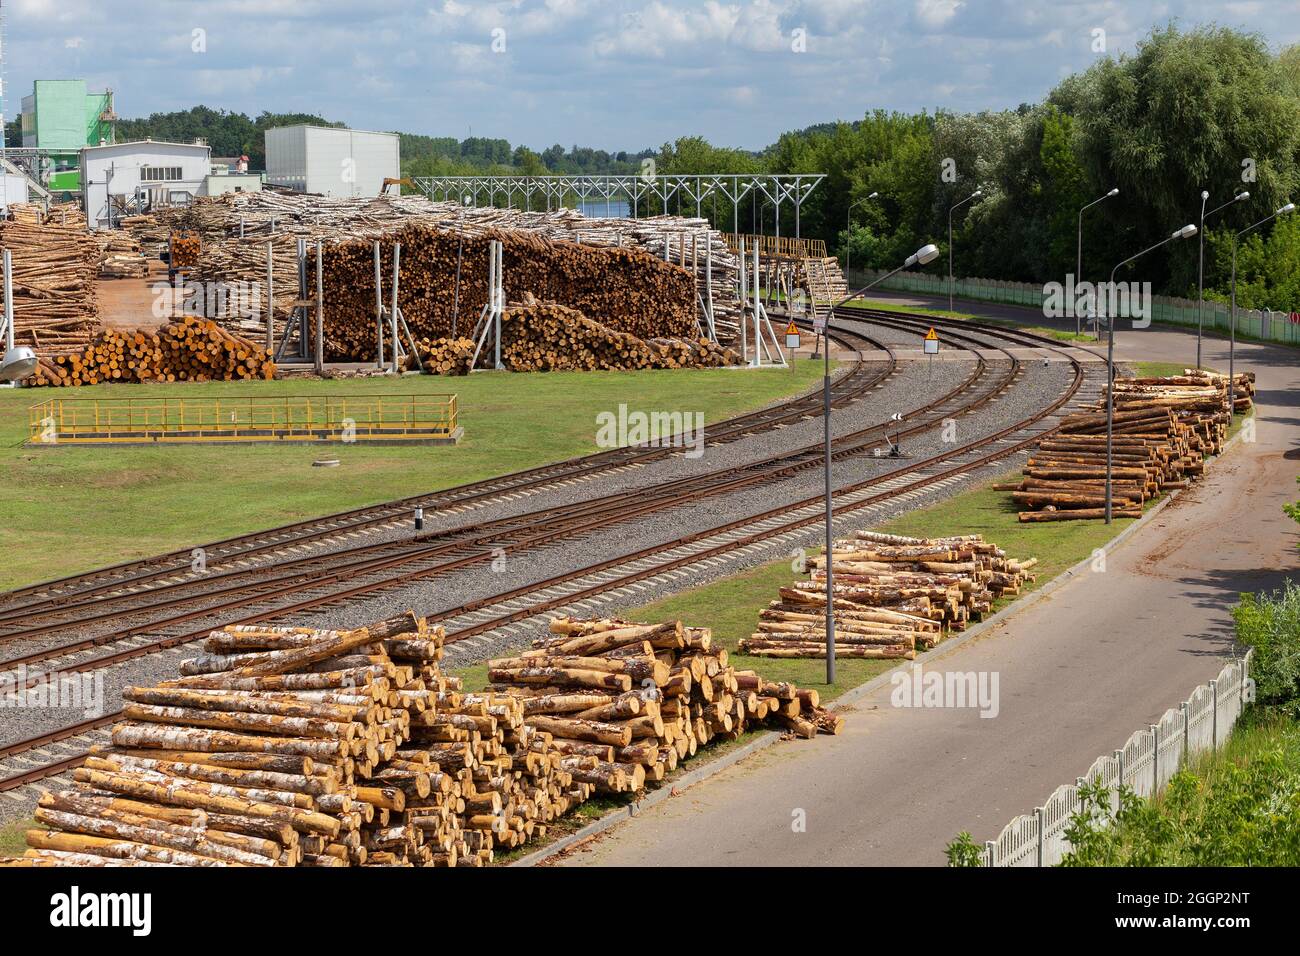 Entrepôt de matières premières en bois en plein air dans une usine de traitement du bois avec voies de chemin de fer d'accès Banque D'Images